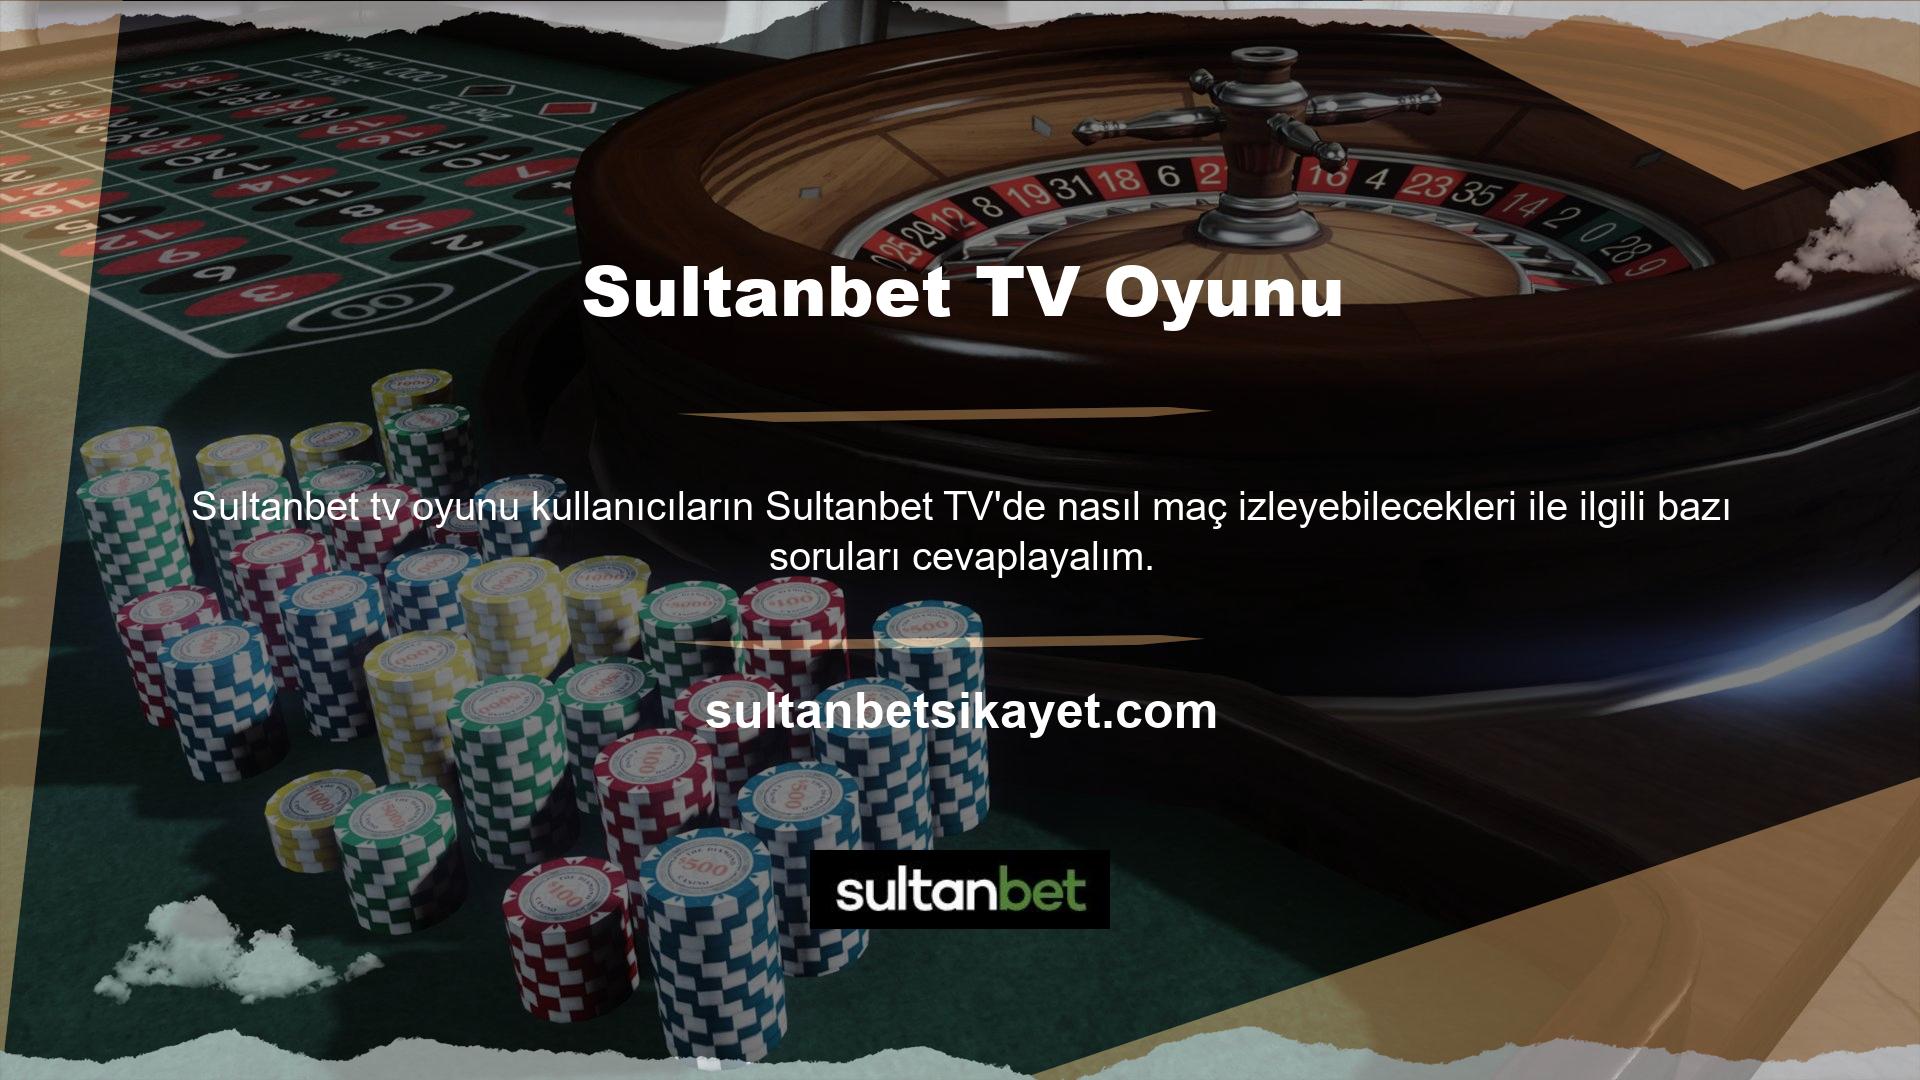 Öncelikle Sultanbet TV'de maç izlemek ücretsizdir